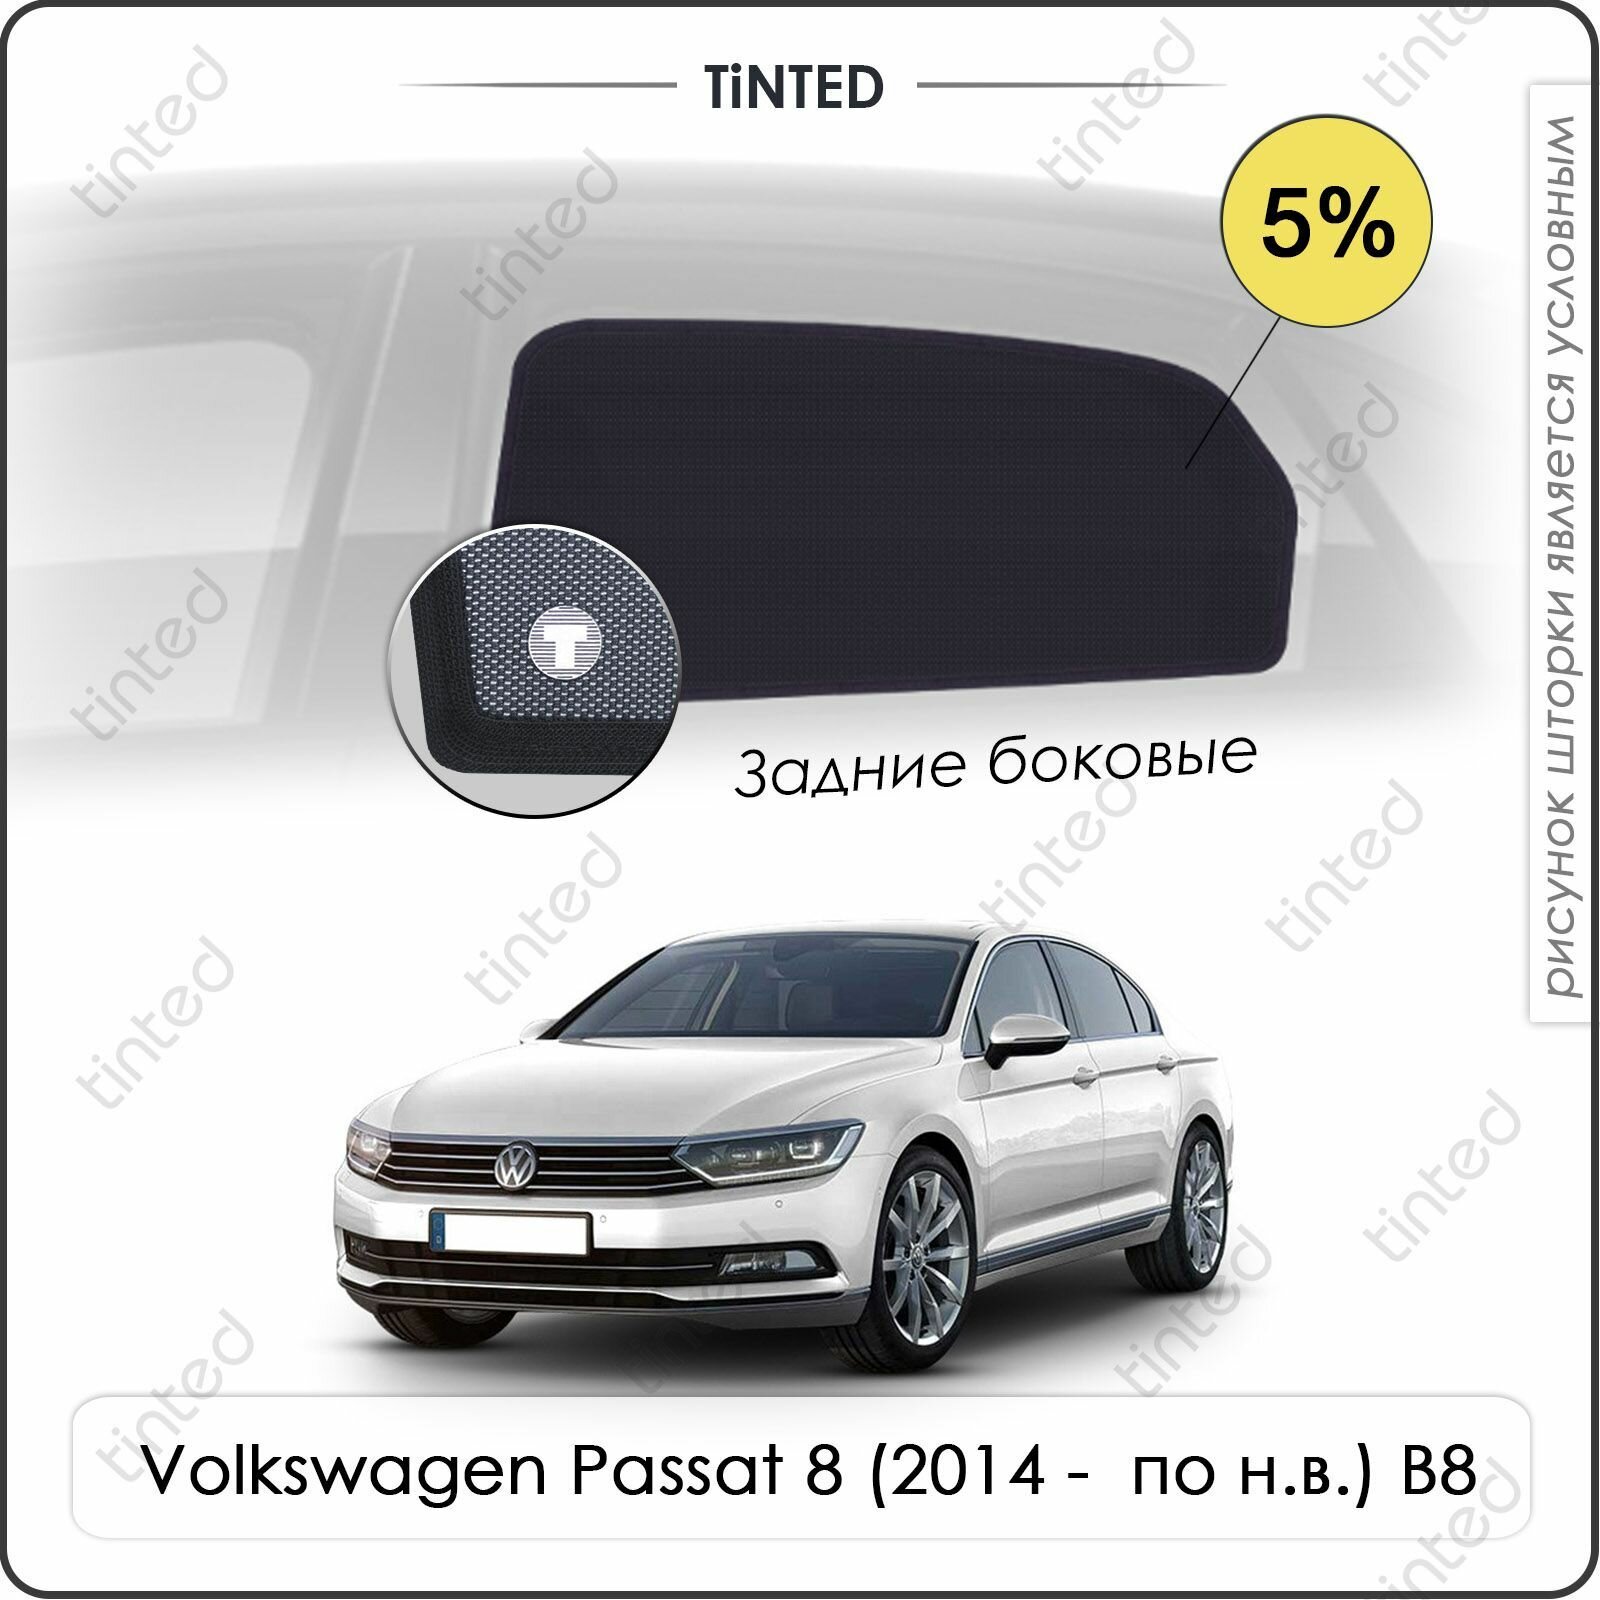 Шторки на автомобиль солнцезащитные Volkswagen Passat 8 Седан 4дв. (2014 - по н. в.) B8 на передние двери 5% сетки от солнца в машину фольксваген пассат Каркасные автошторки Premium